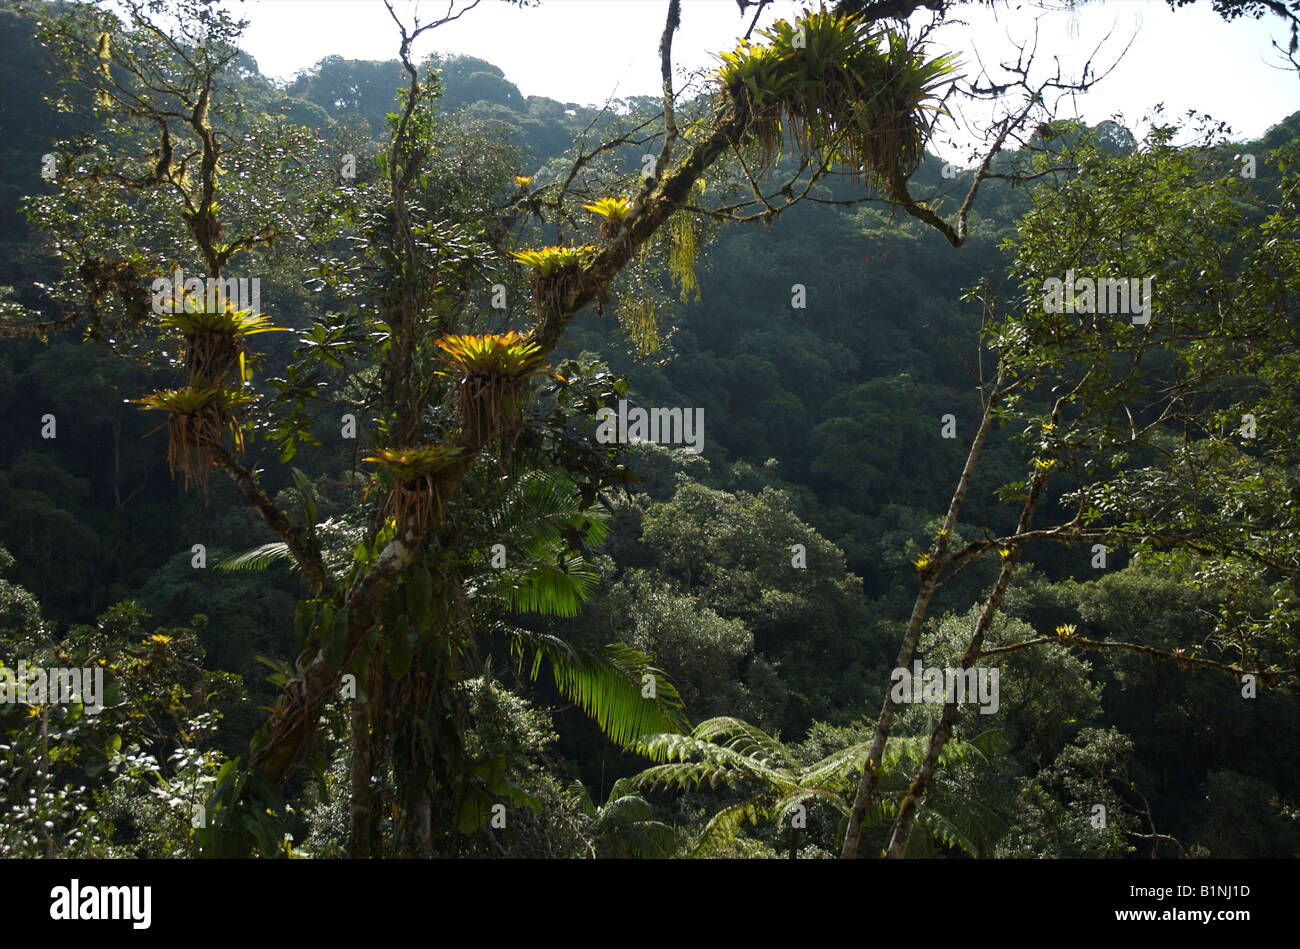 La foresta pluviale atlantica brasiliana, un habitat minacciato a livello globale. Foto Stock